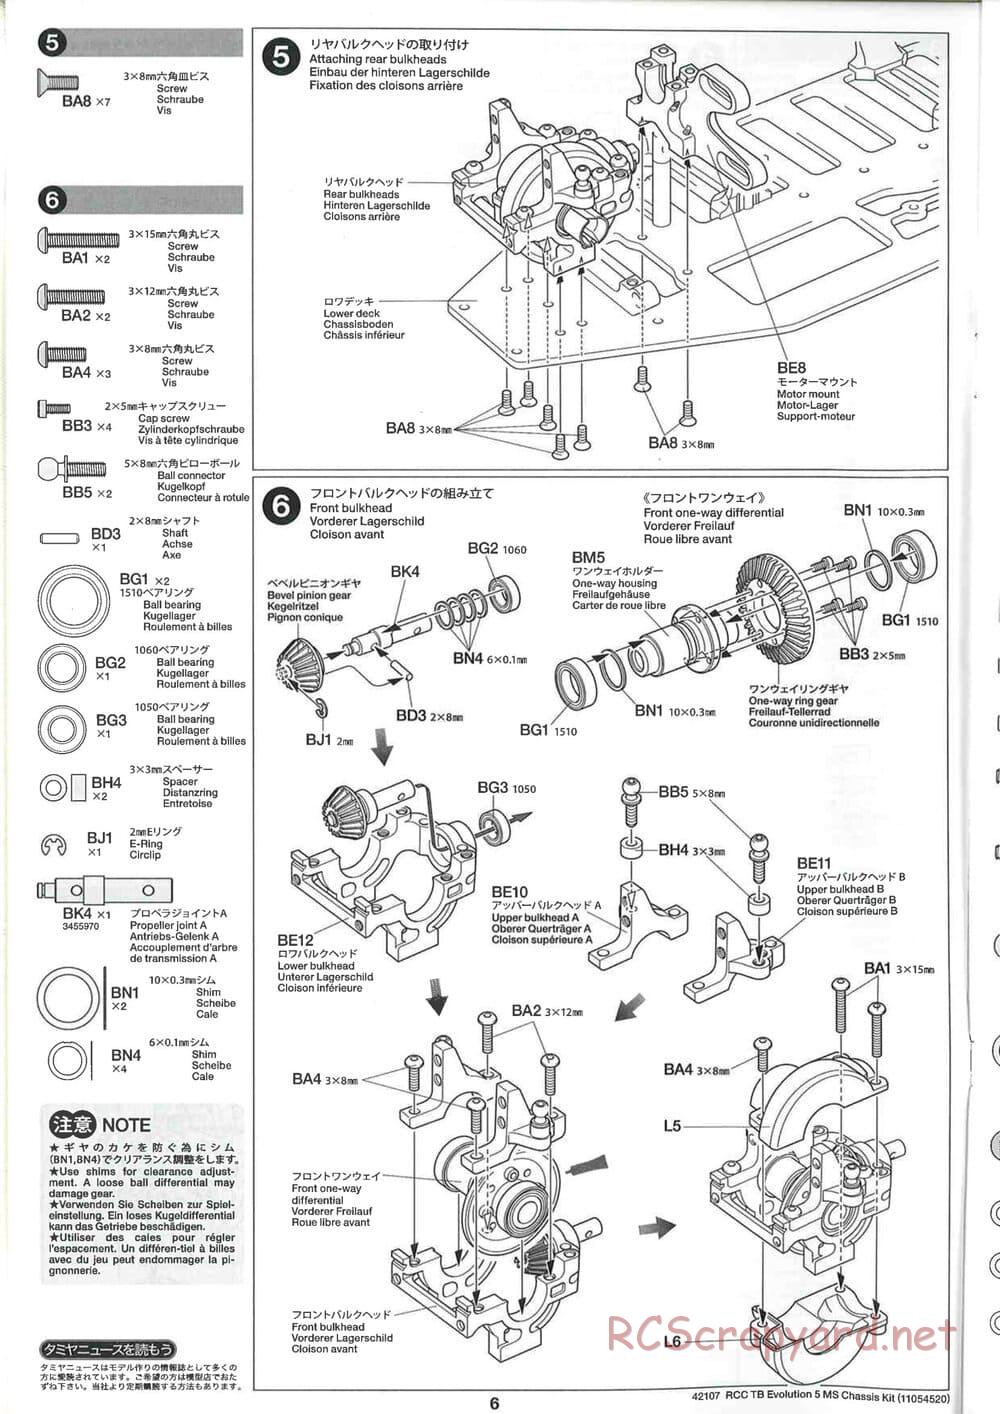 Tamiya - TB Evolution 5 MS Chassis - Manual - Page 6